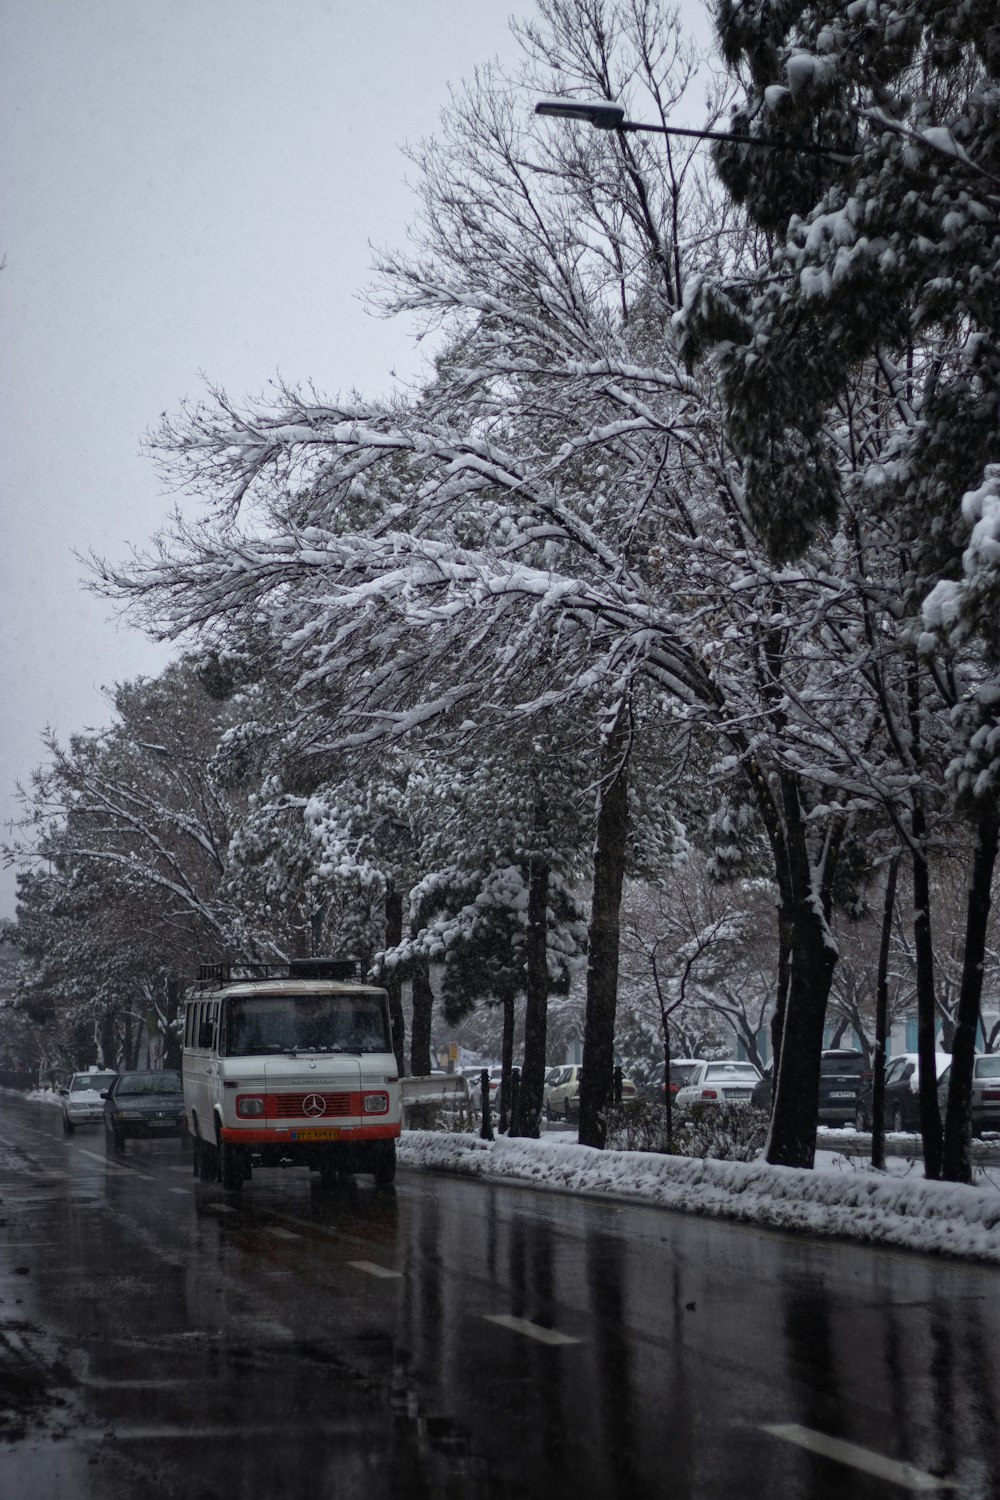 Un bus rouge et blanc roulant dans une rue enneigée